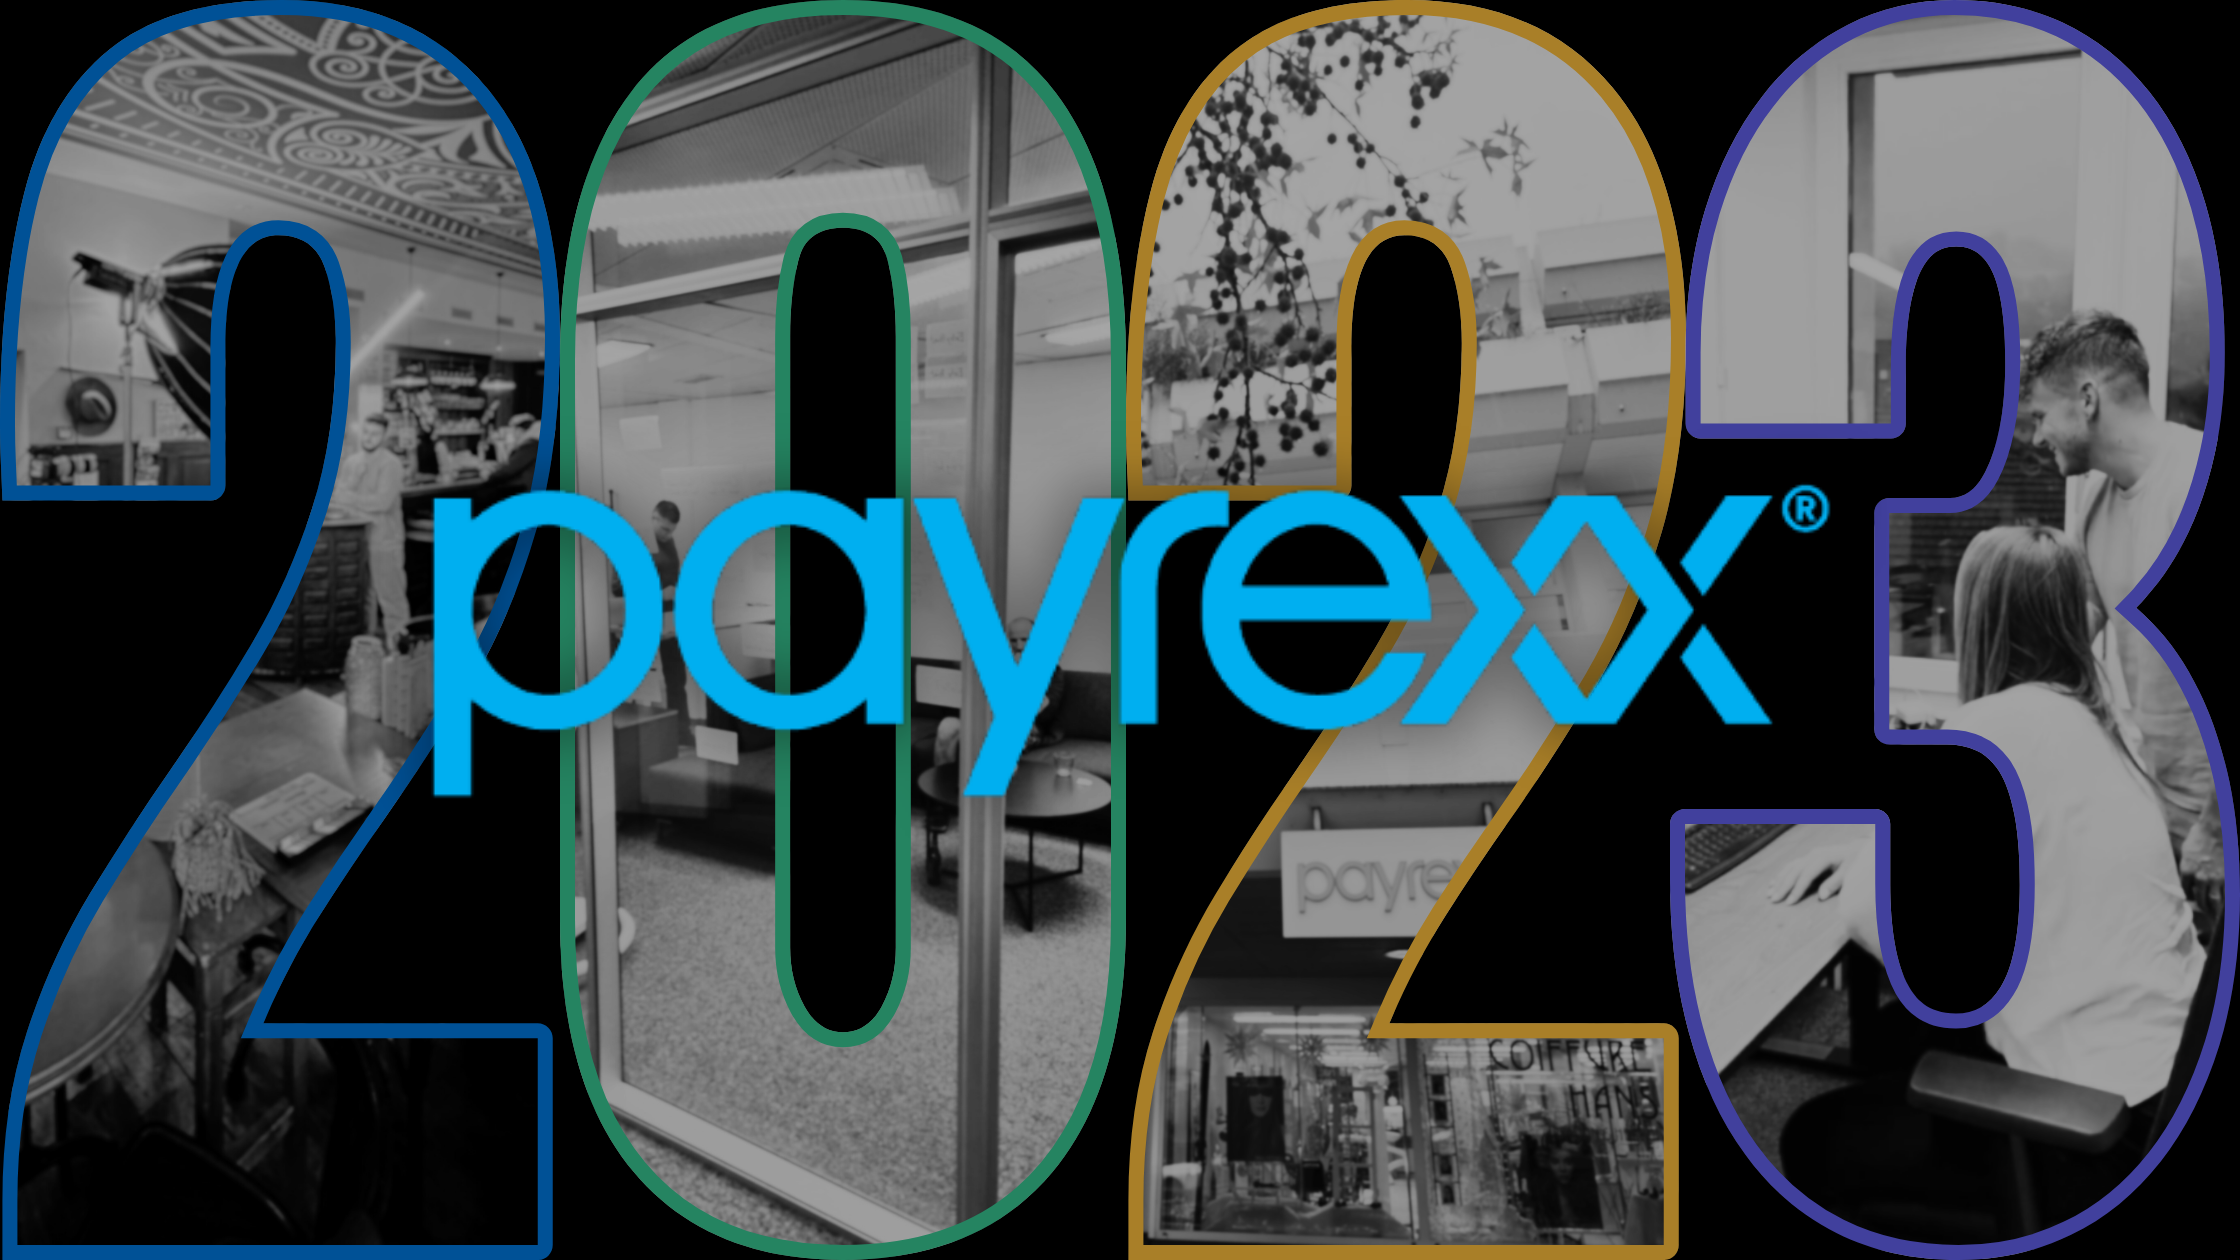 Payrexx in ripresa: un promettente esercizio 2023 con crescita in tutti i settori